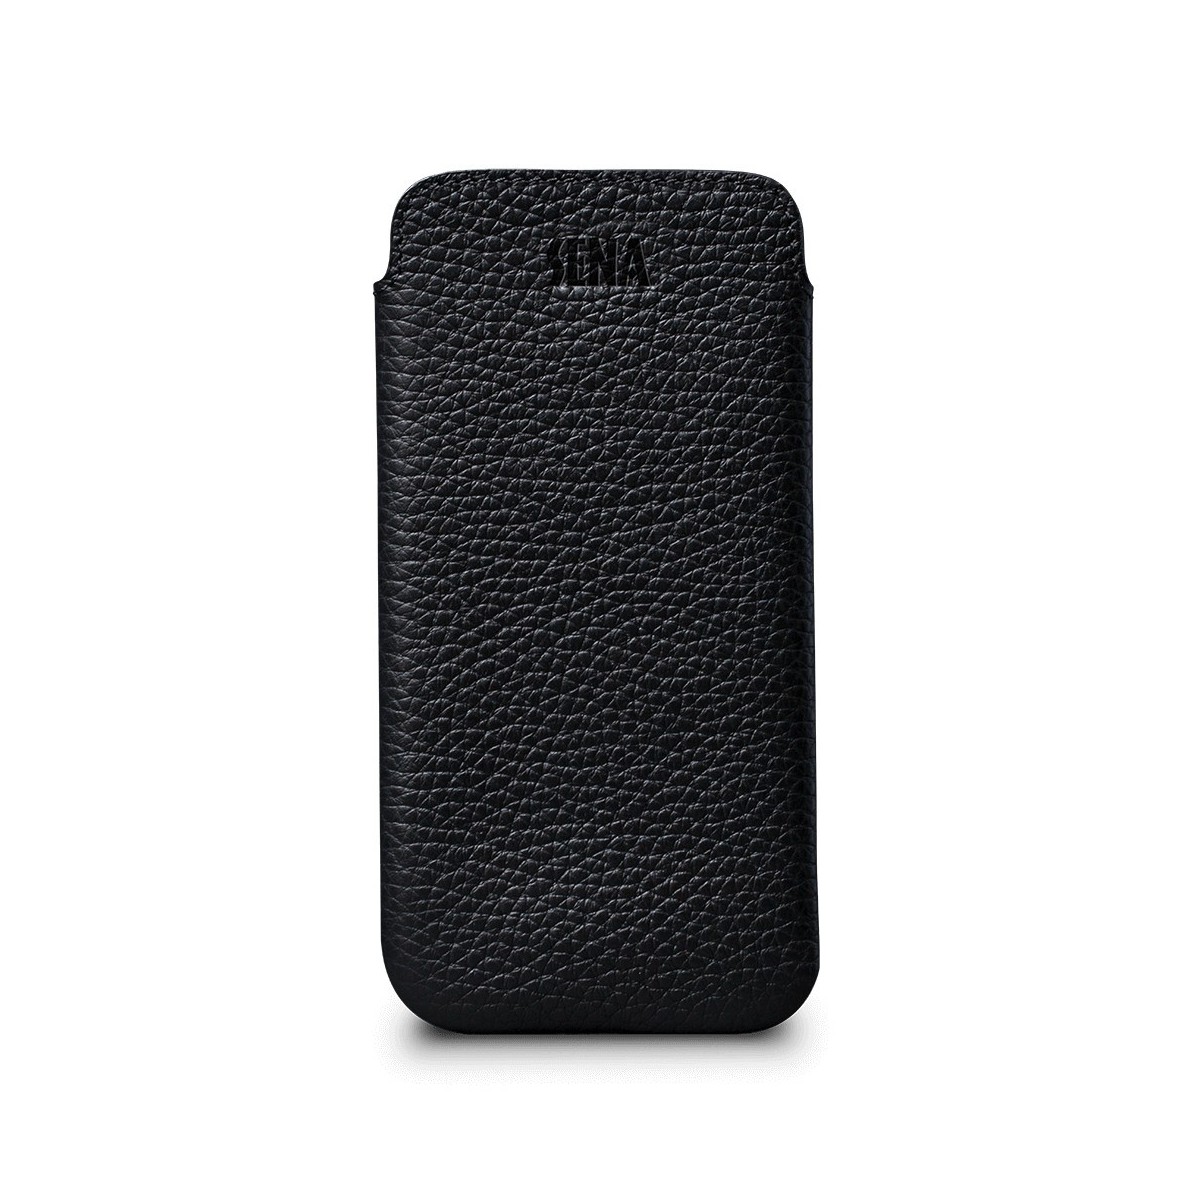 Housse iPhone 8 Plus / 7 Plus en cuir véritable noir - Sena Cases